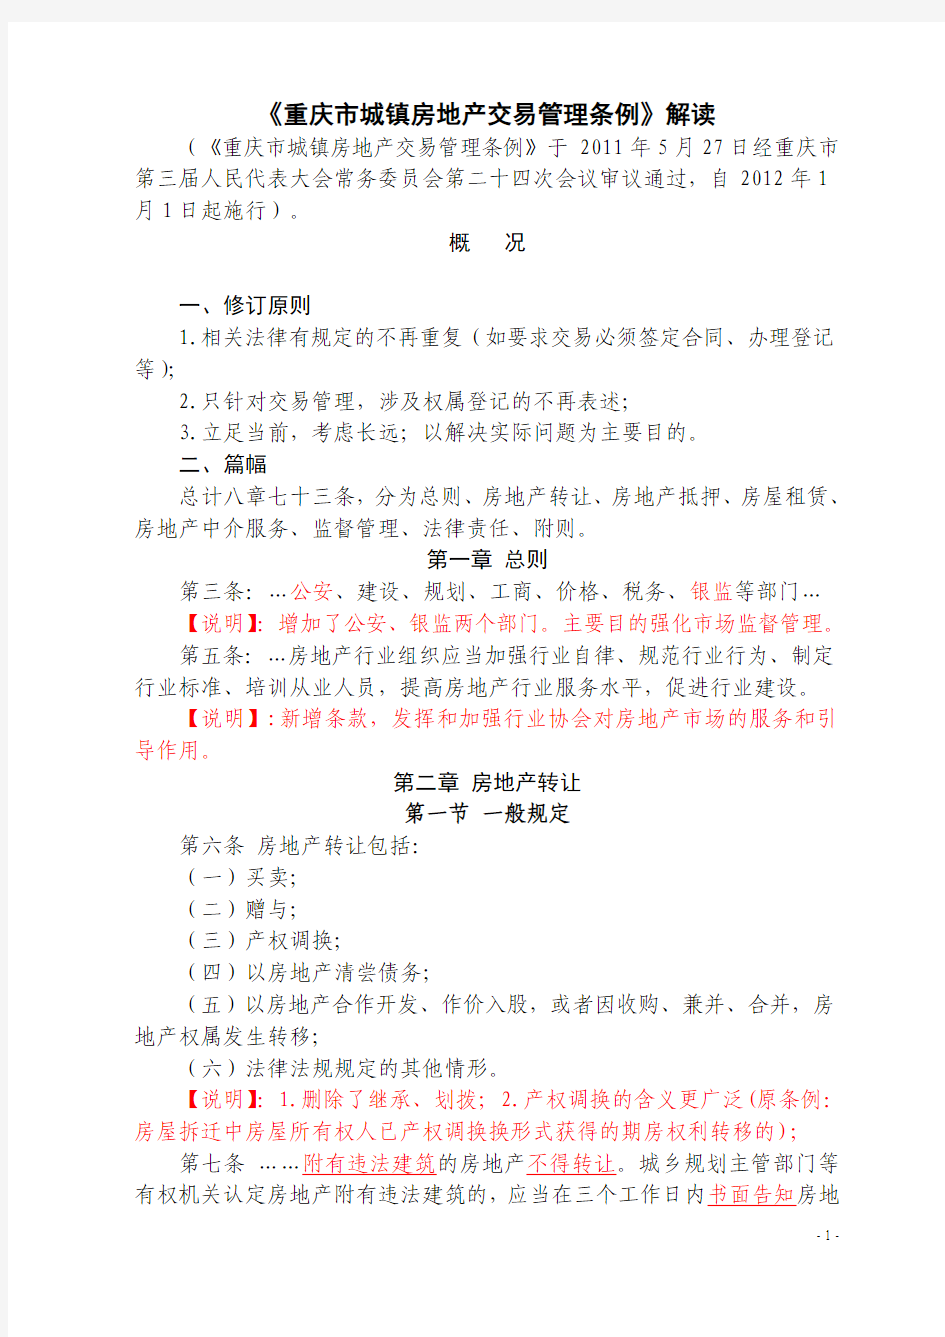 重庆市城镇房地产交易管理条例解读